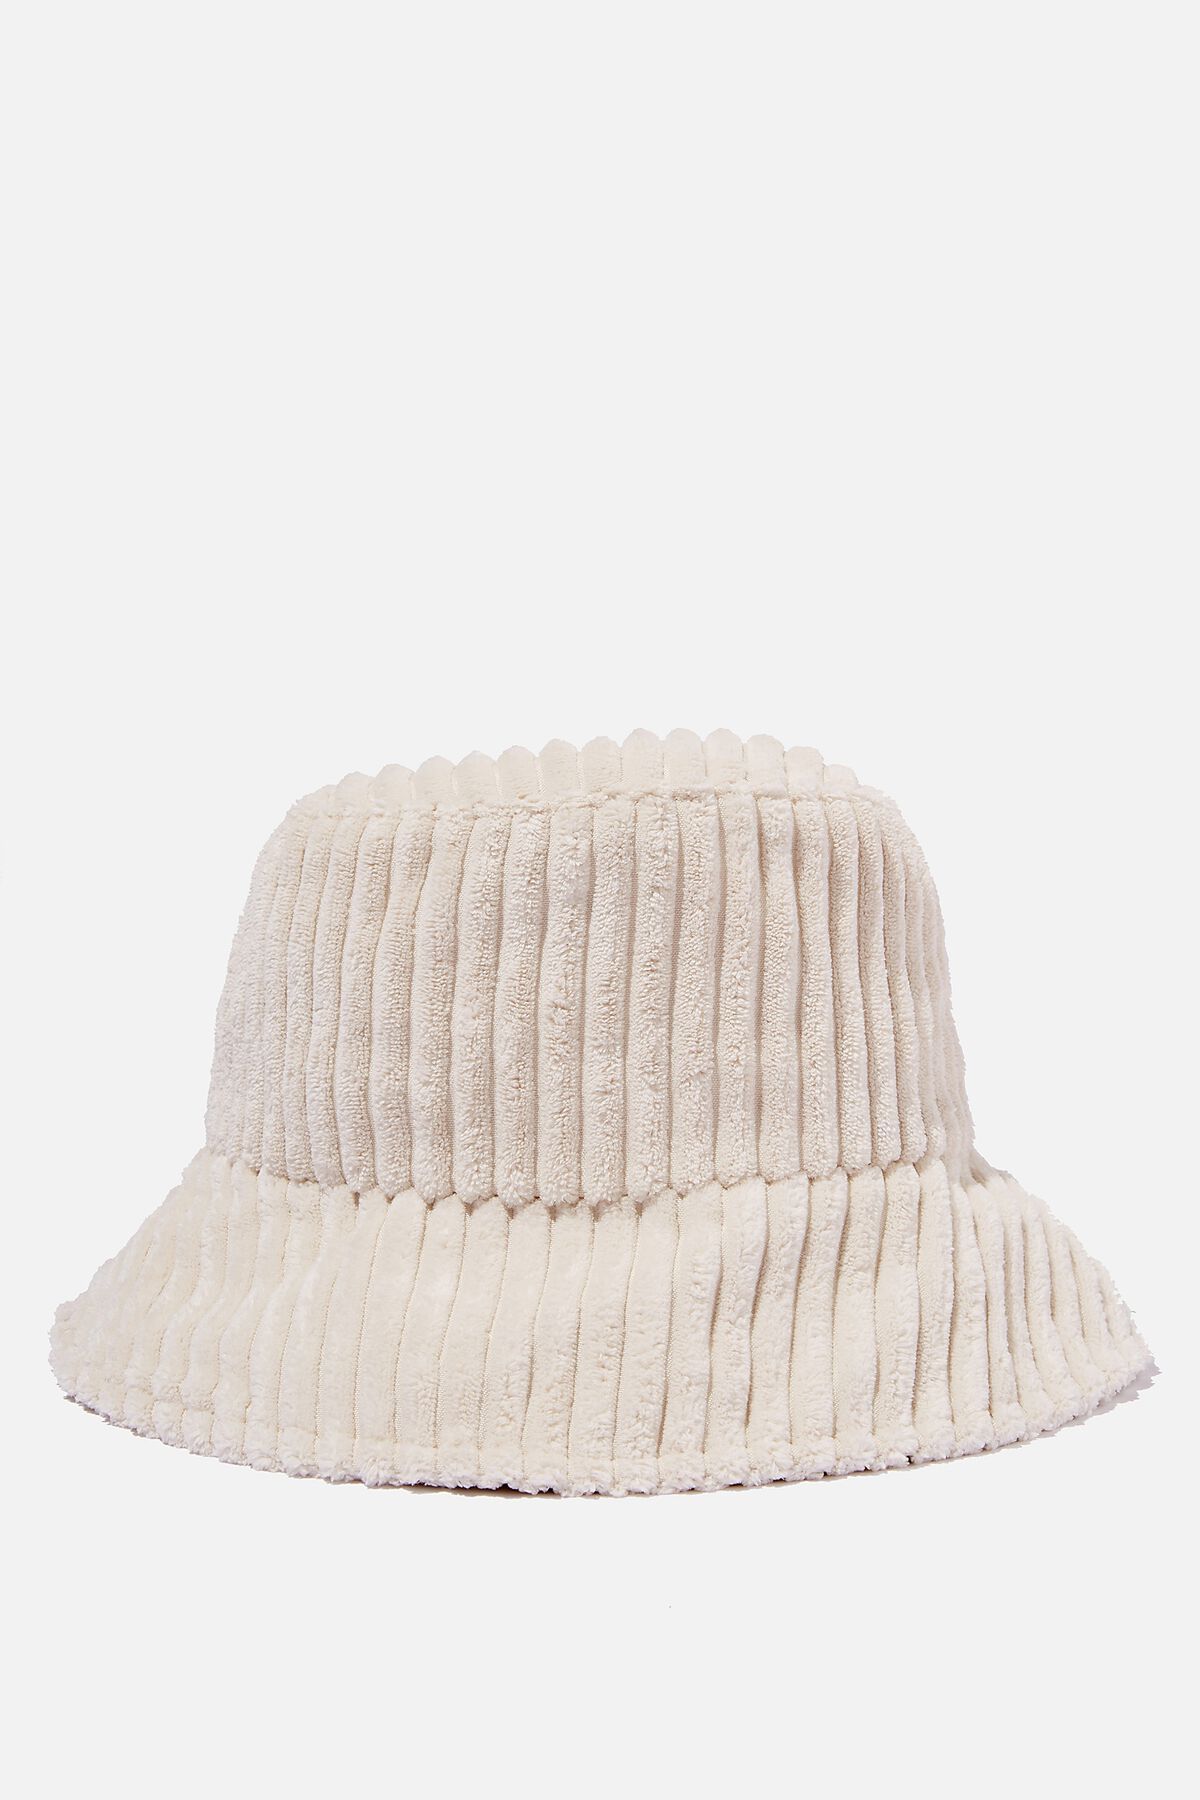 Bianca Textured Bucket Hat | Cotton On (ANZ)